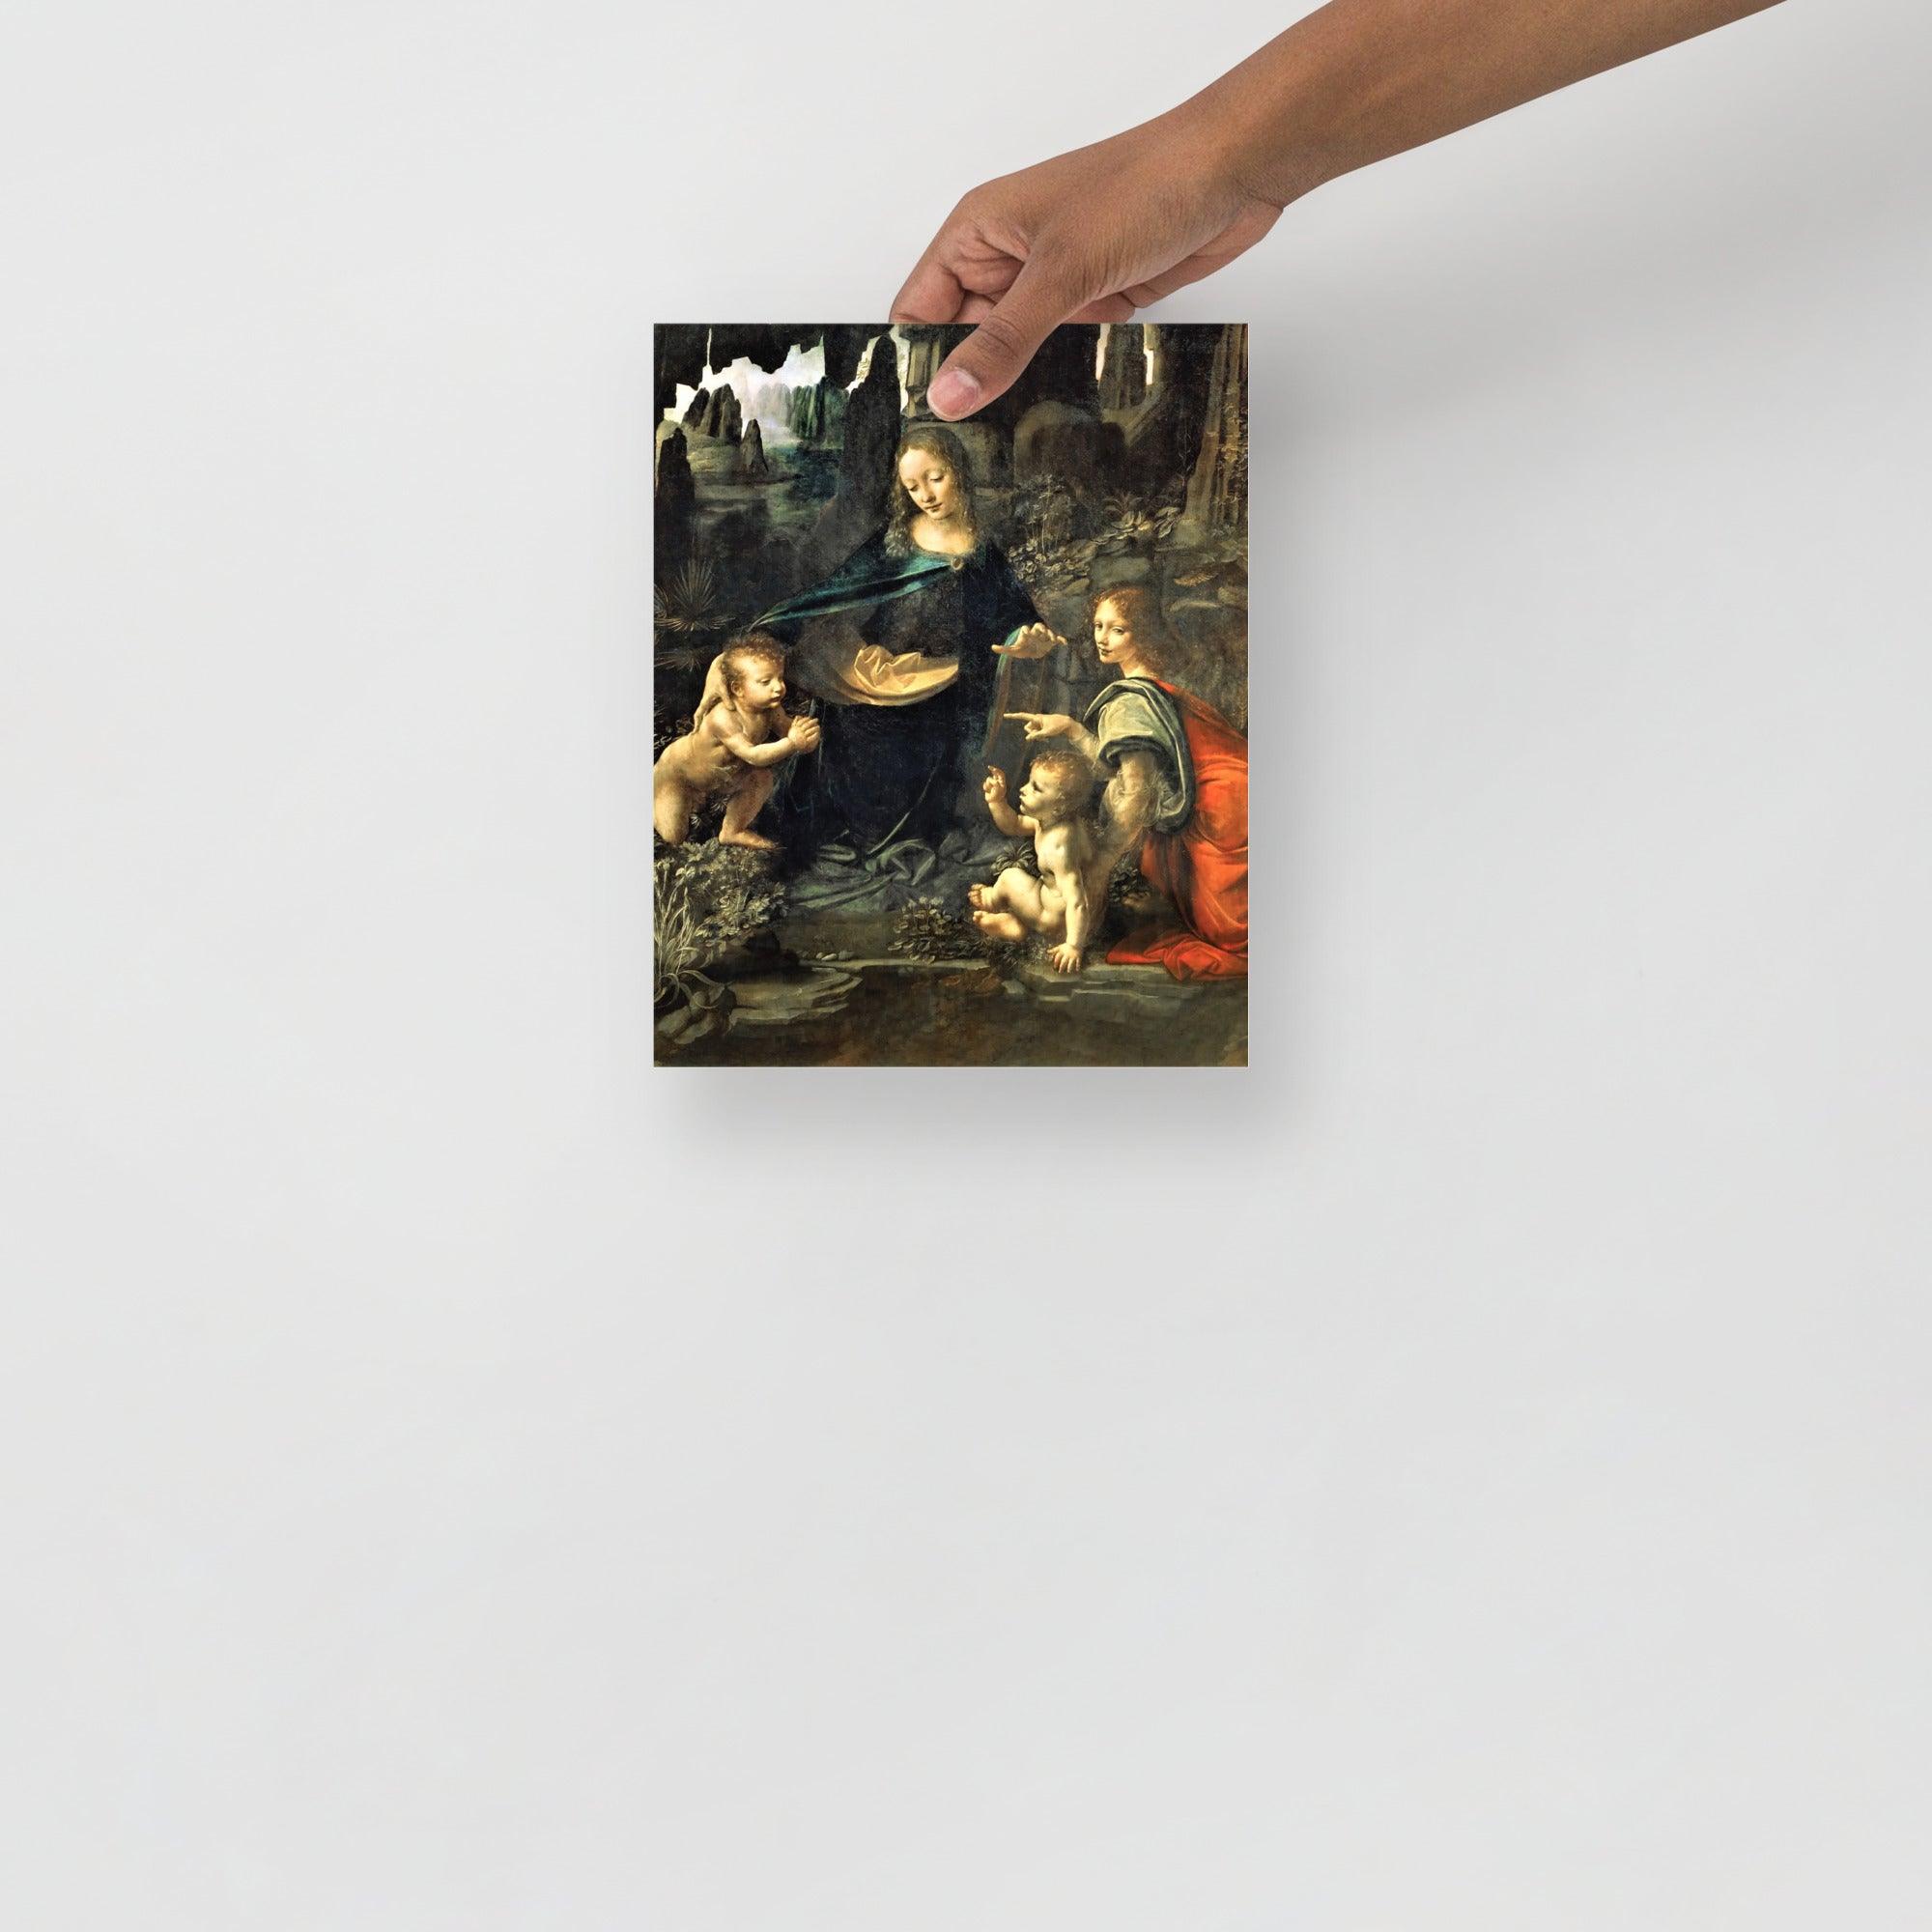 A Virgin of the Rocks by Leonardo Da Vinci  poster on a plain backdrop in size 8x10”.